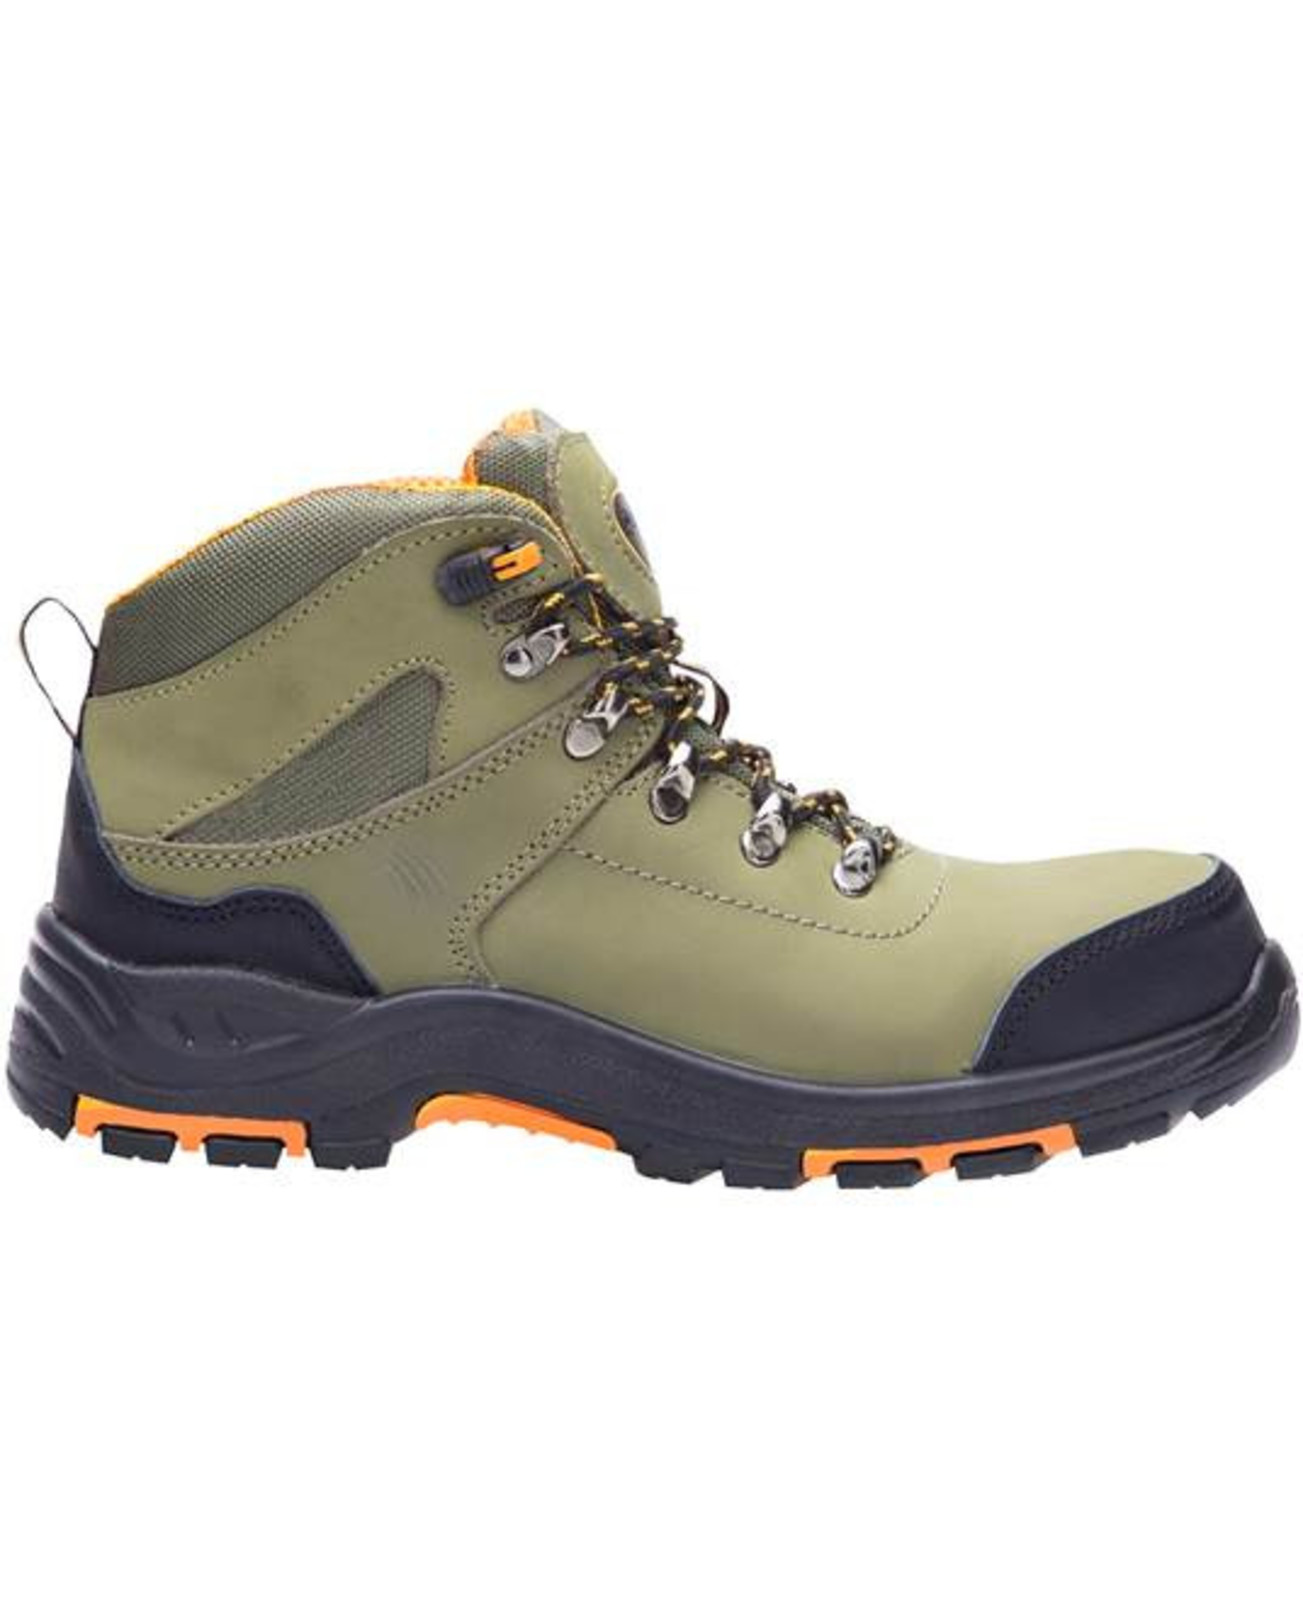 Bezpečnostná členková obuv Ardon Grinder S3 FO HRO SRC - veľkosť: 43, farba: khaki/oranžová